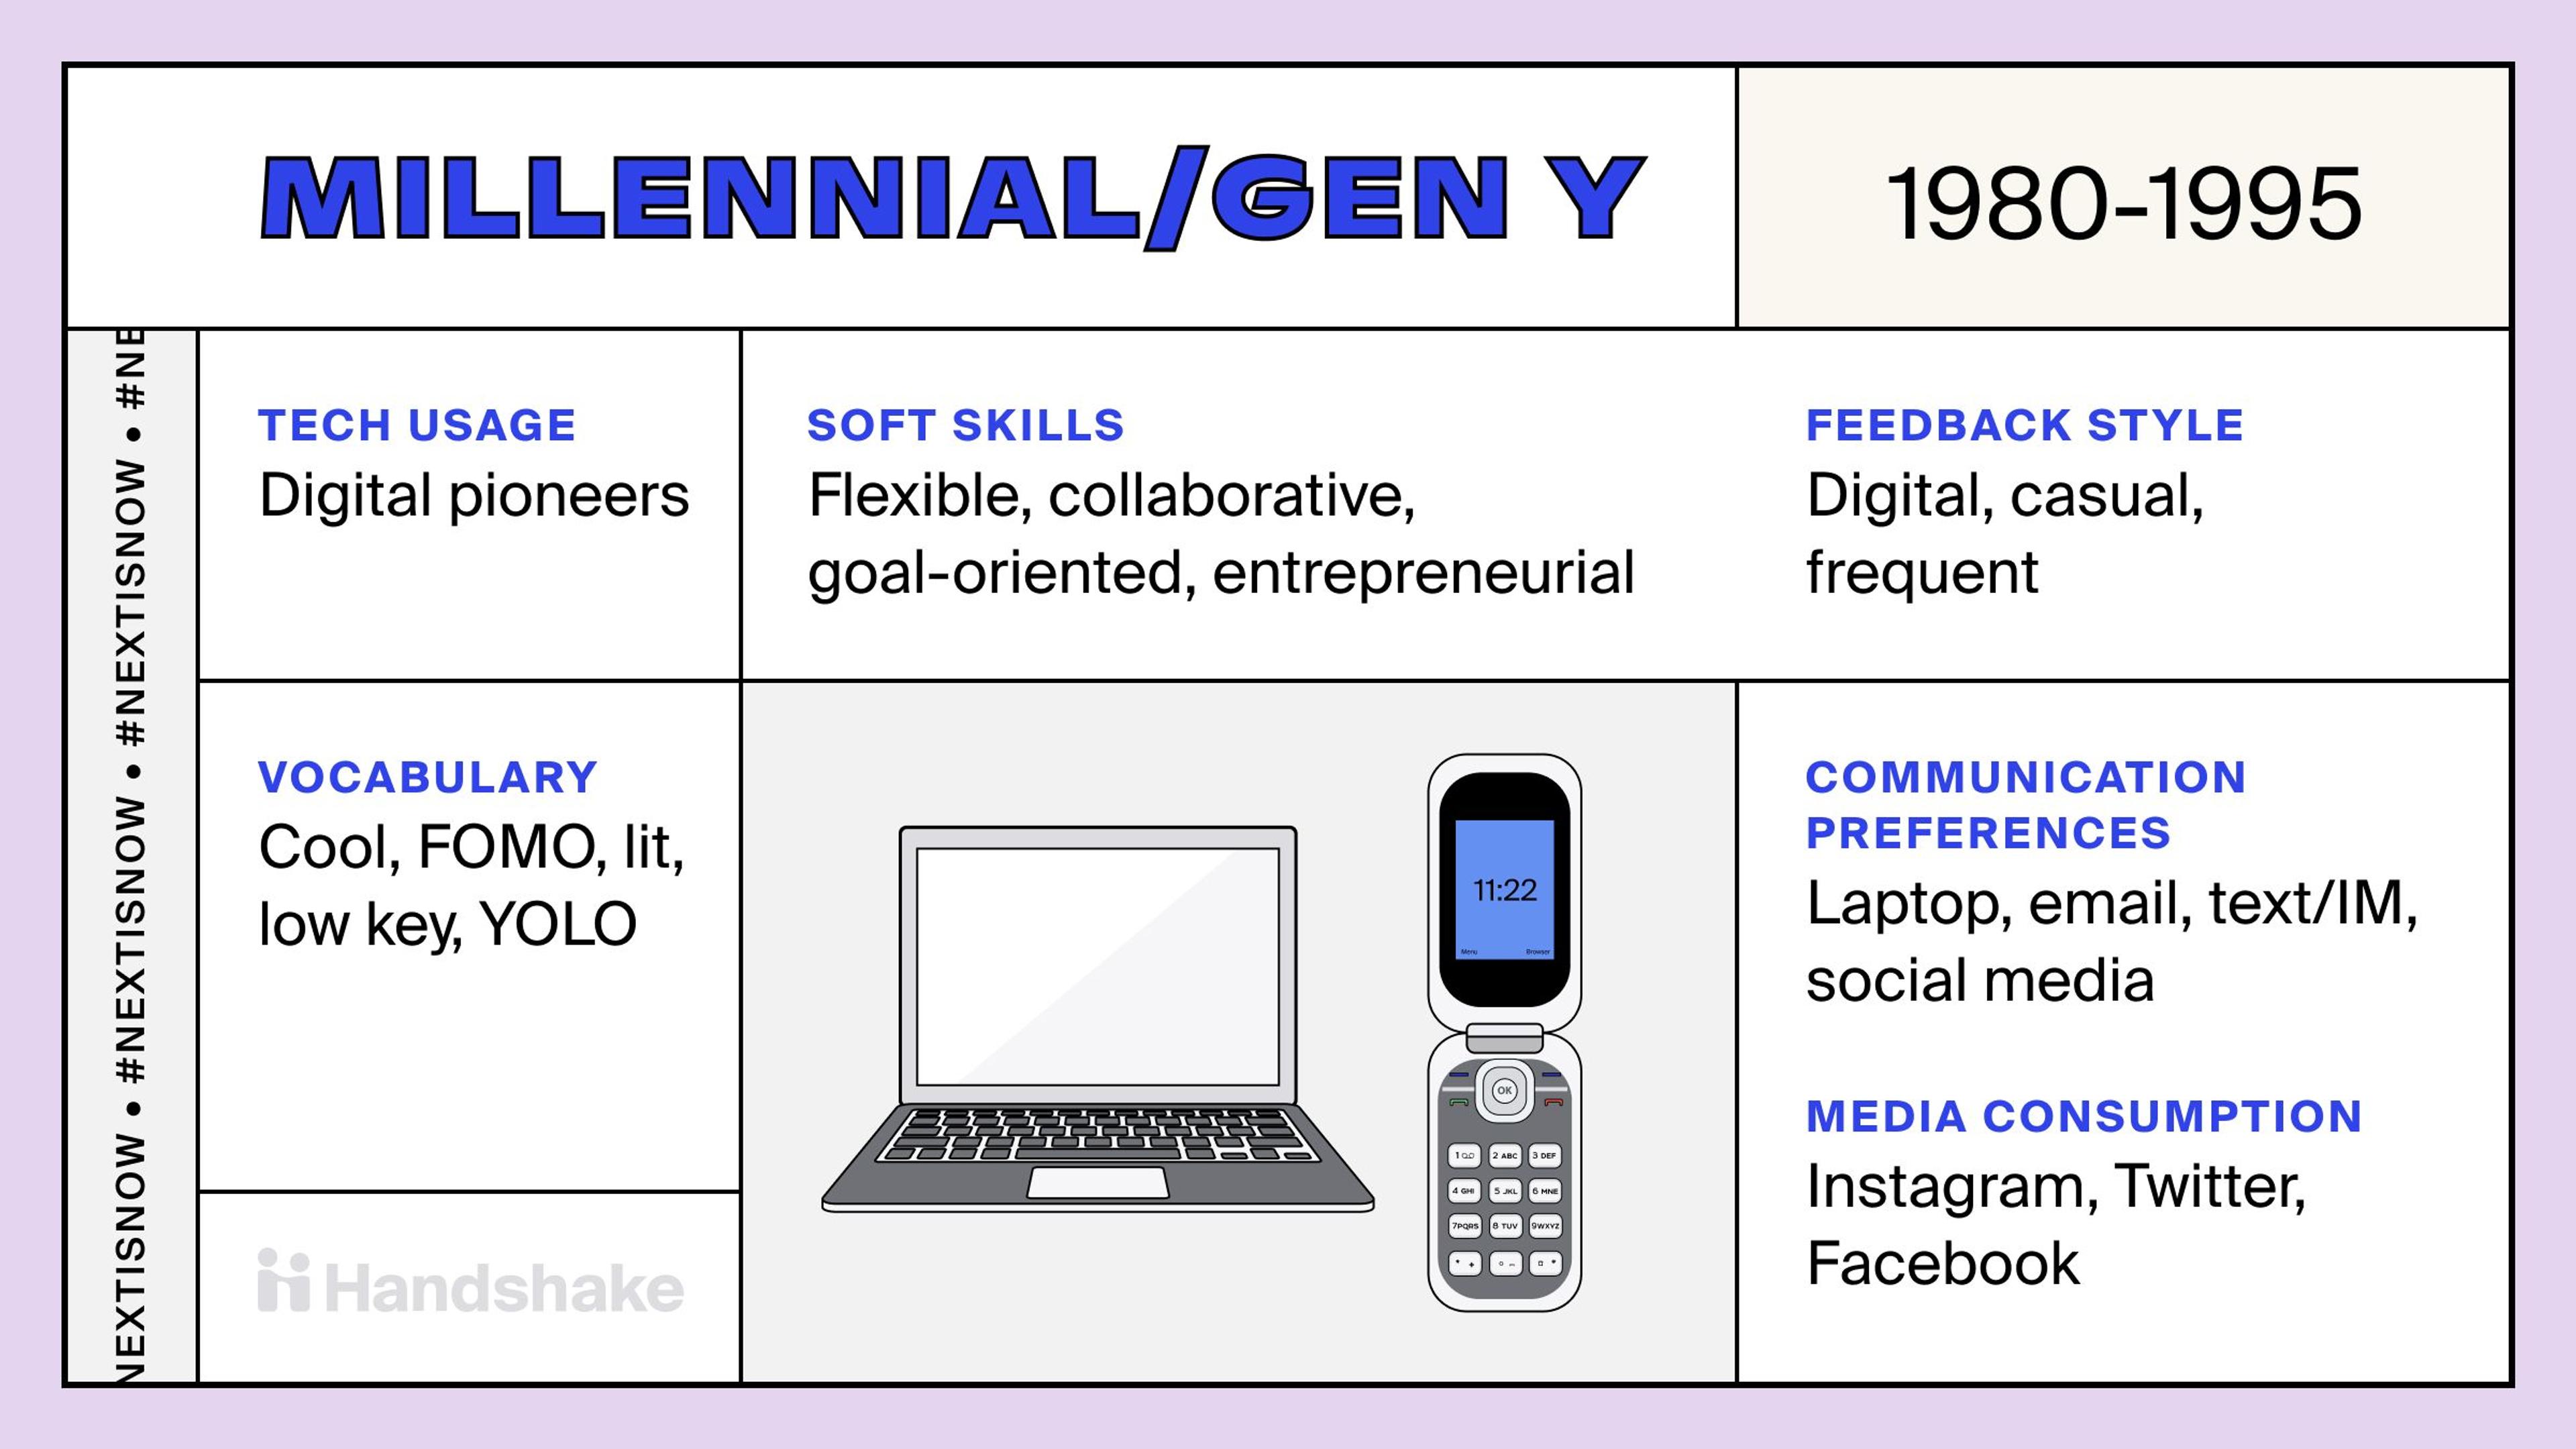 Millennial/Gen Y trading card